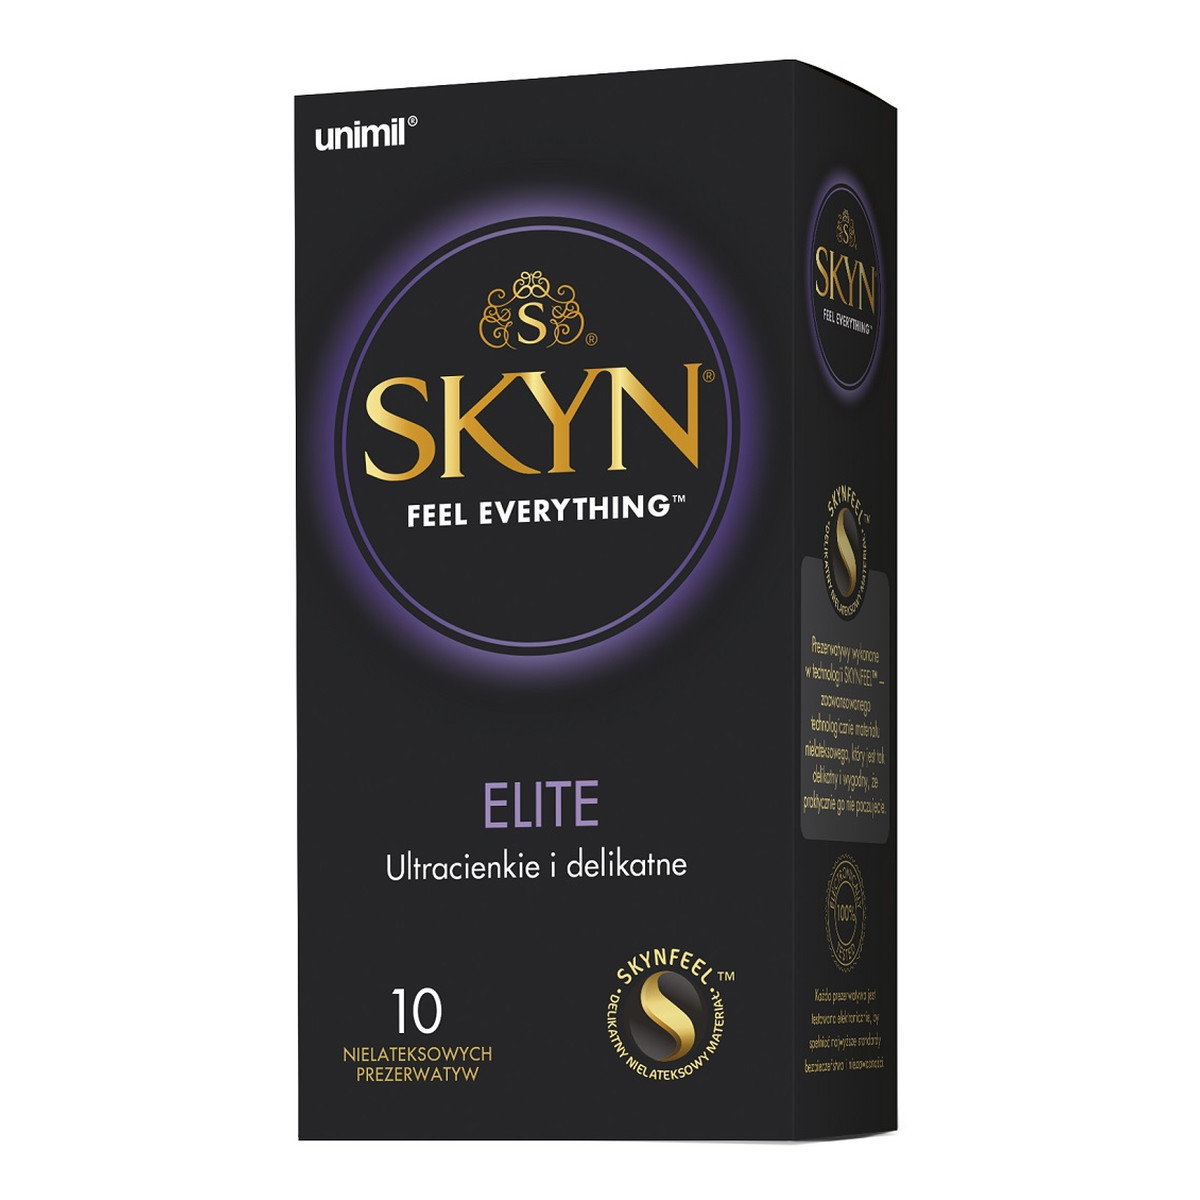 Unimil Skyn elite nielateksowe prezerwatywy 10szt